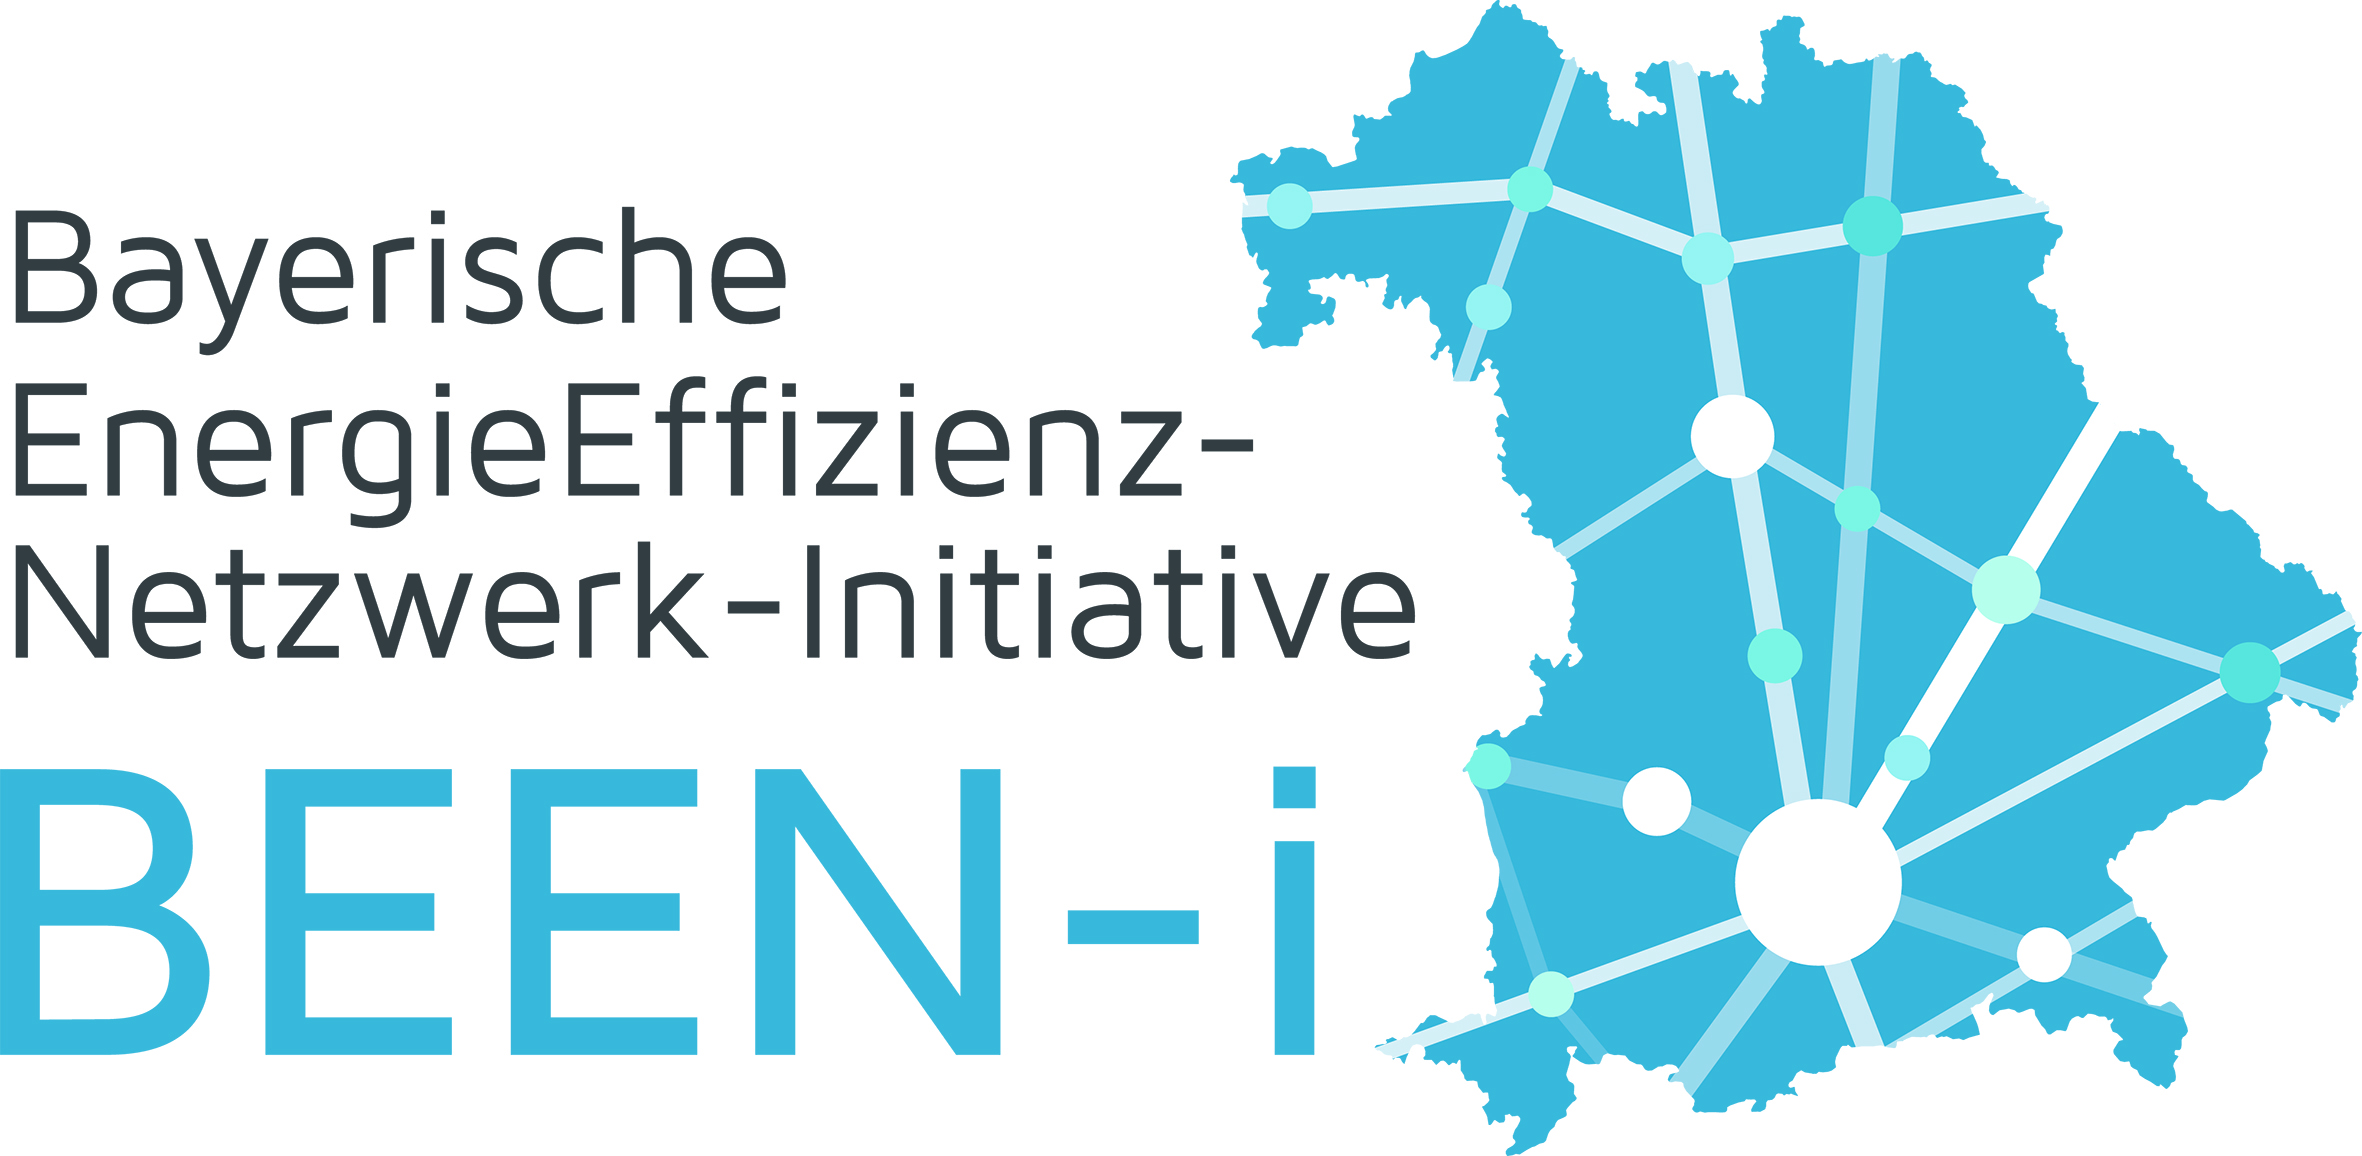 Neuer Schwung für Bayerische EnergieEffizienz-Netzwerk-Initiative mit BEEN-i 2.0